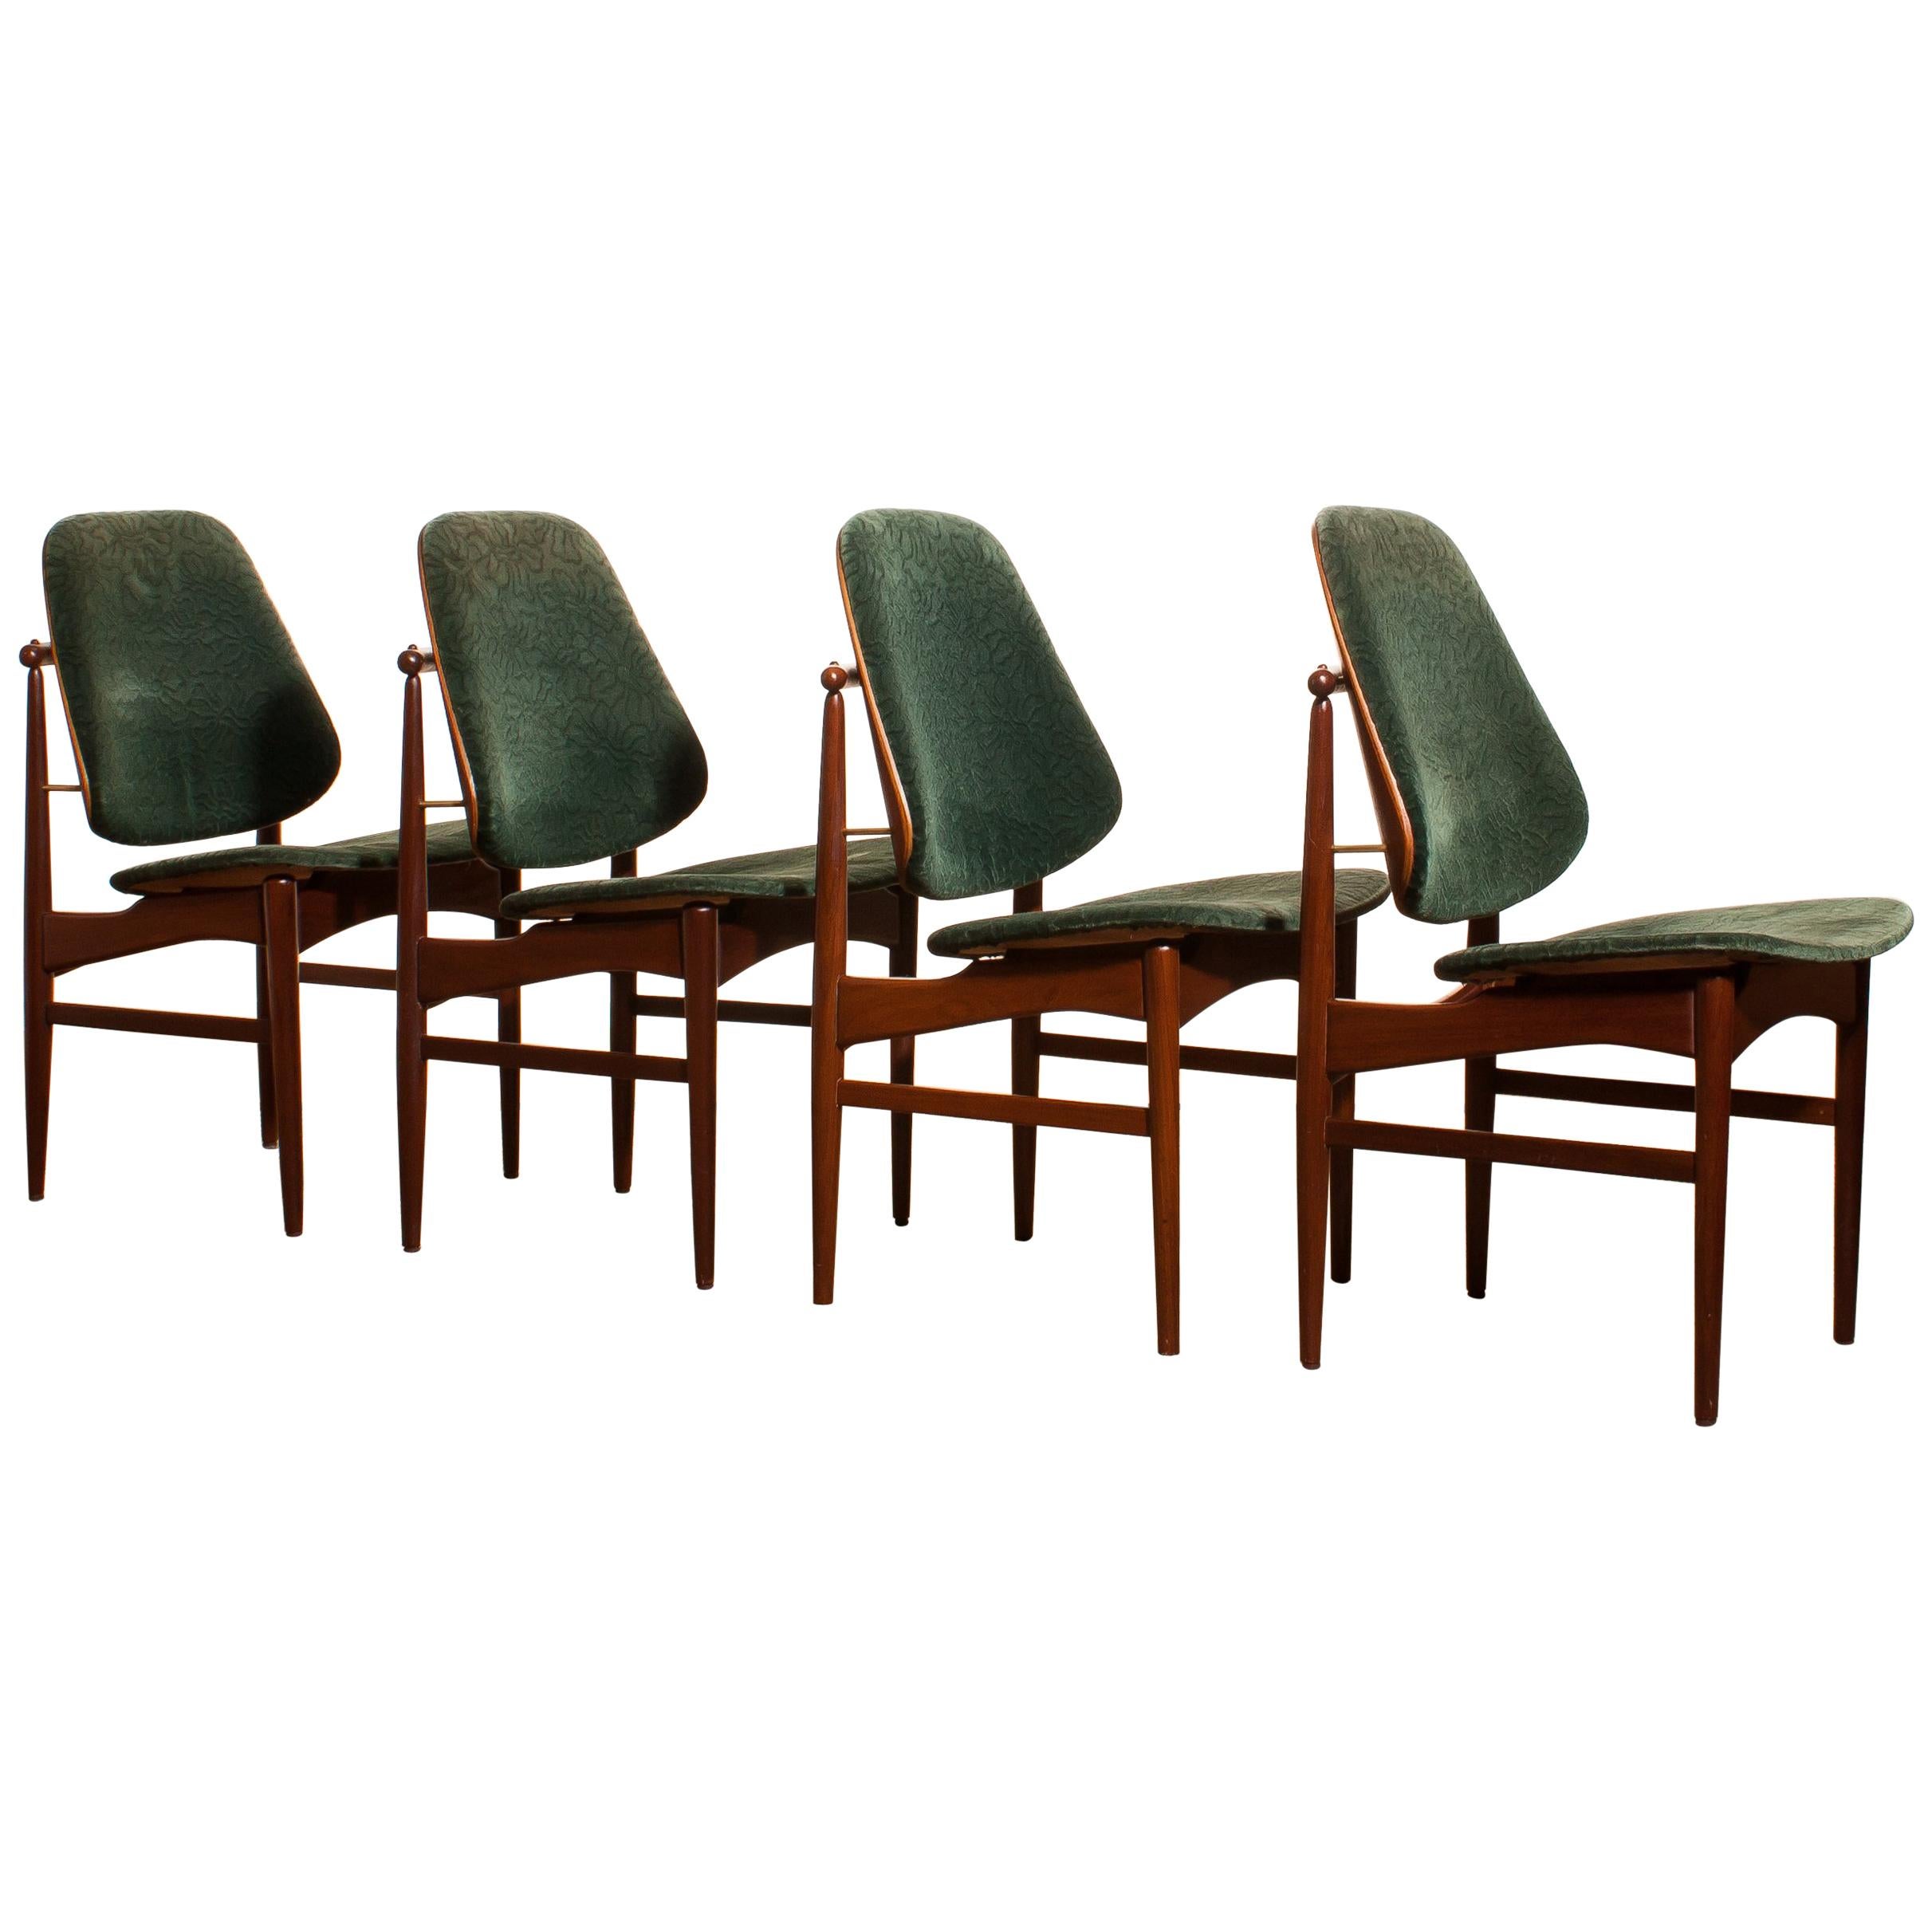 Mid-Century Modern 1950s, Set of Four Teak Dining Chairs by Arne Vodder for France & Daverkosen